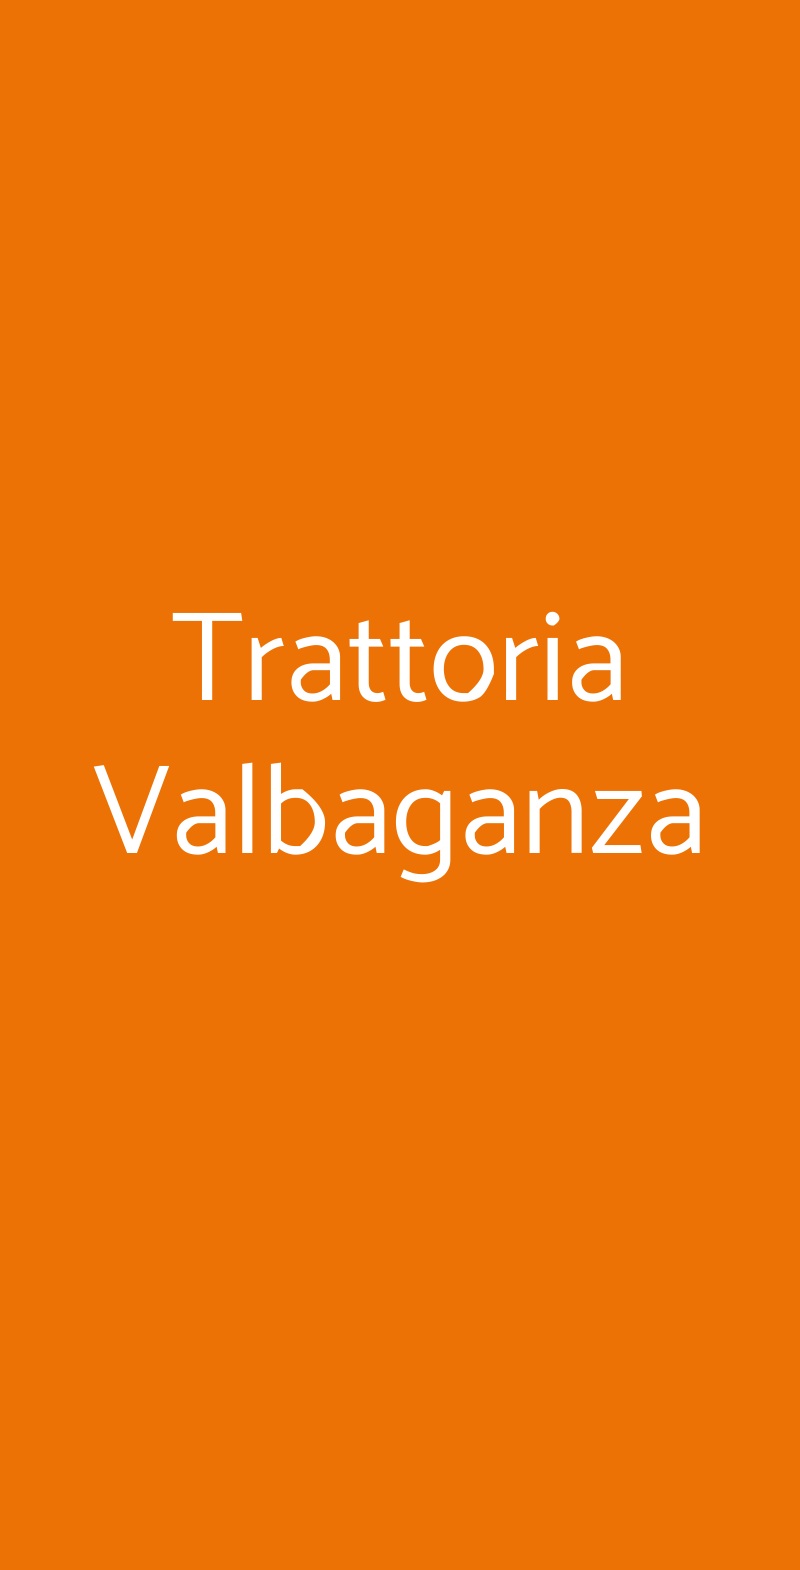 Trattoria Valbaganza Sala Baganza menù 1 pagina